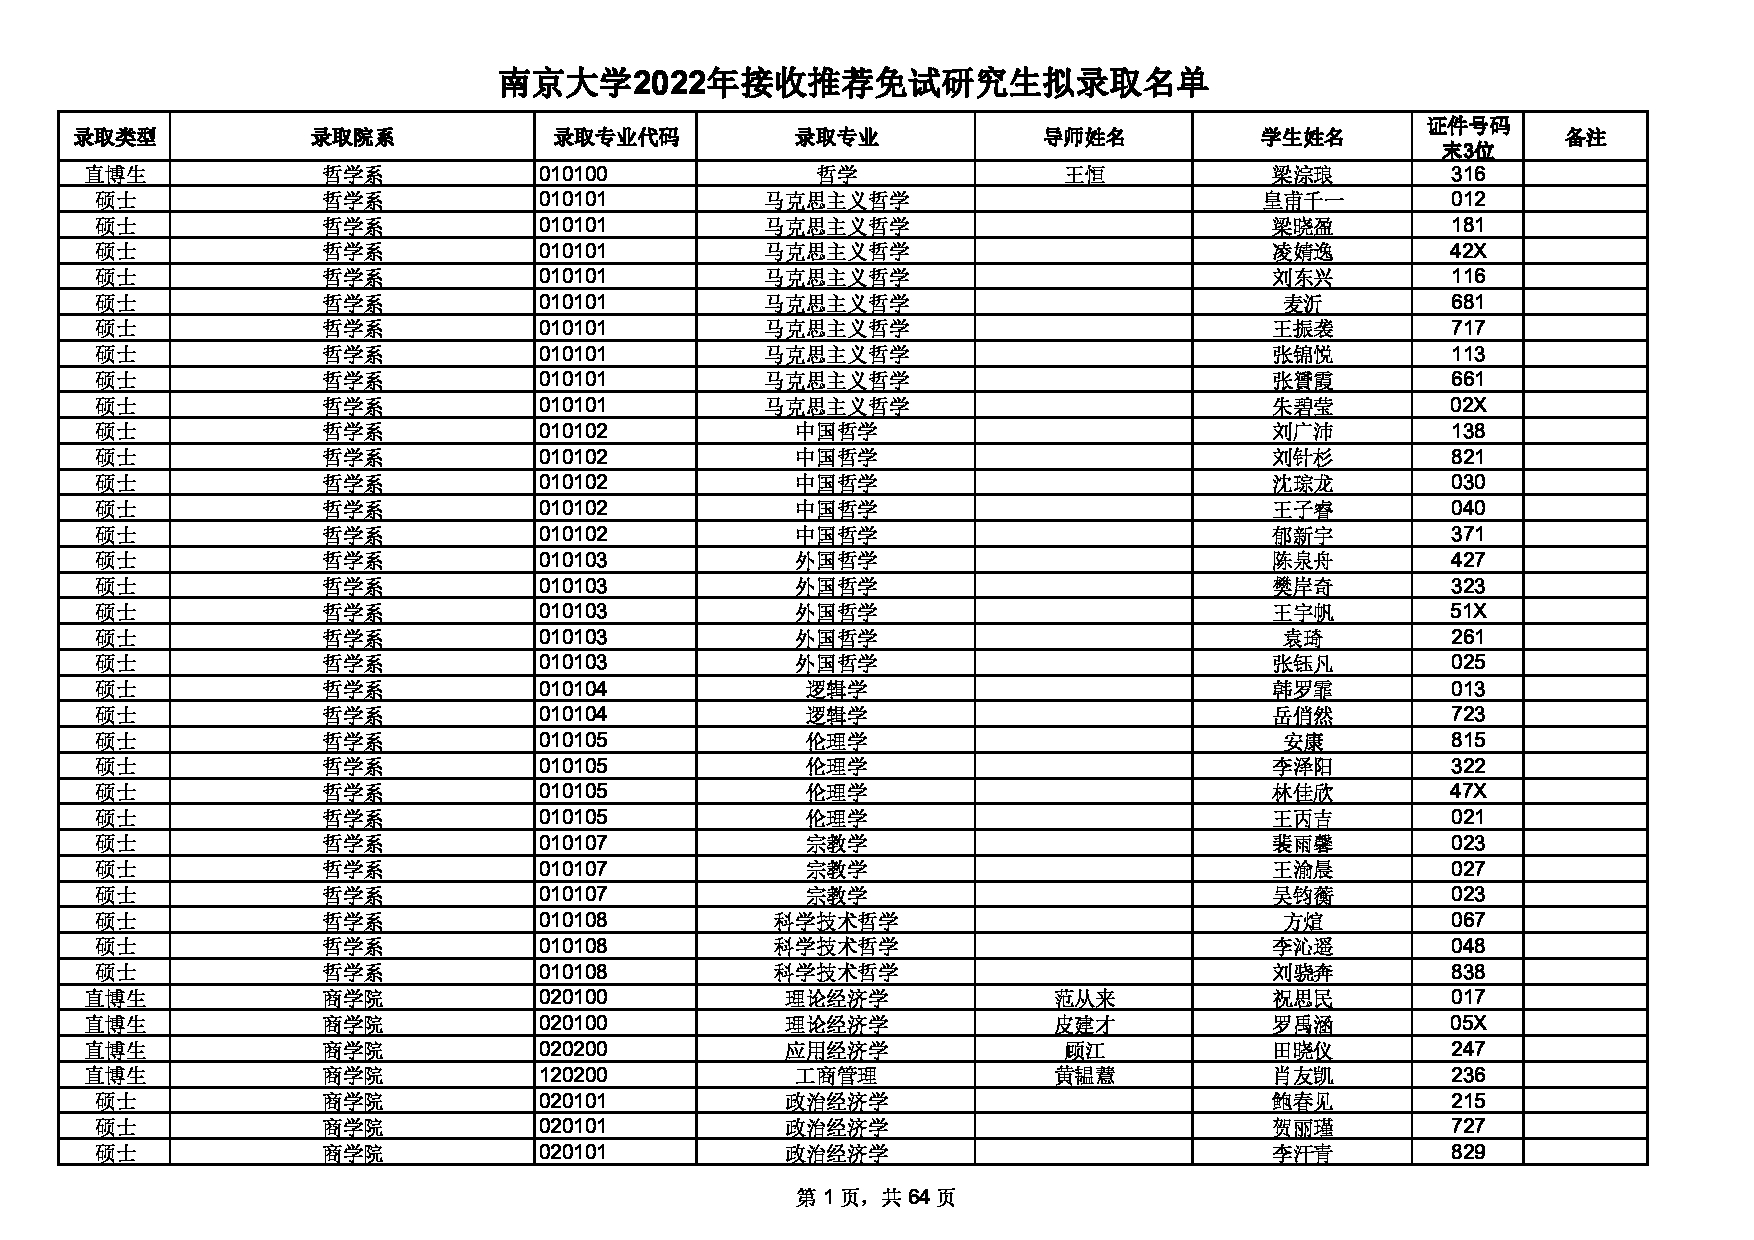 2022考研拟录取名单：南京大学2022年接收推荐免试研究生拟录取名单第1页